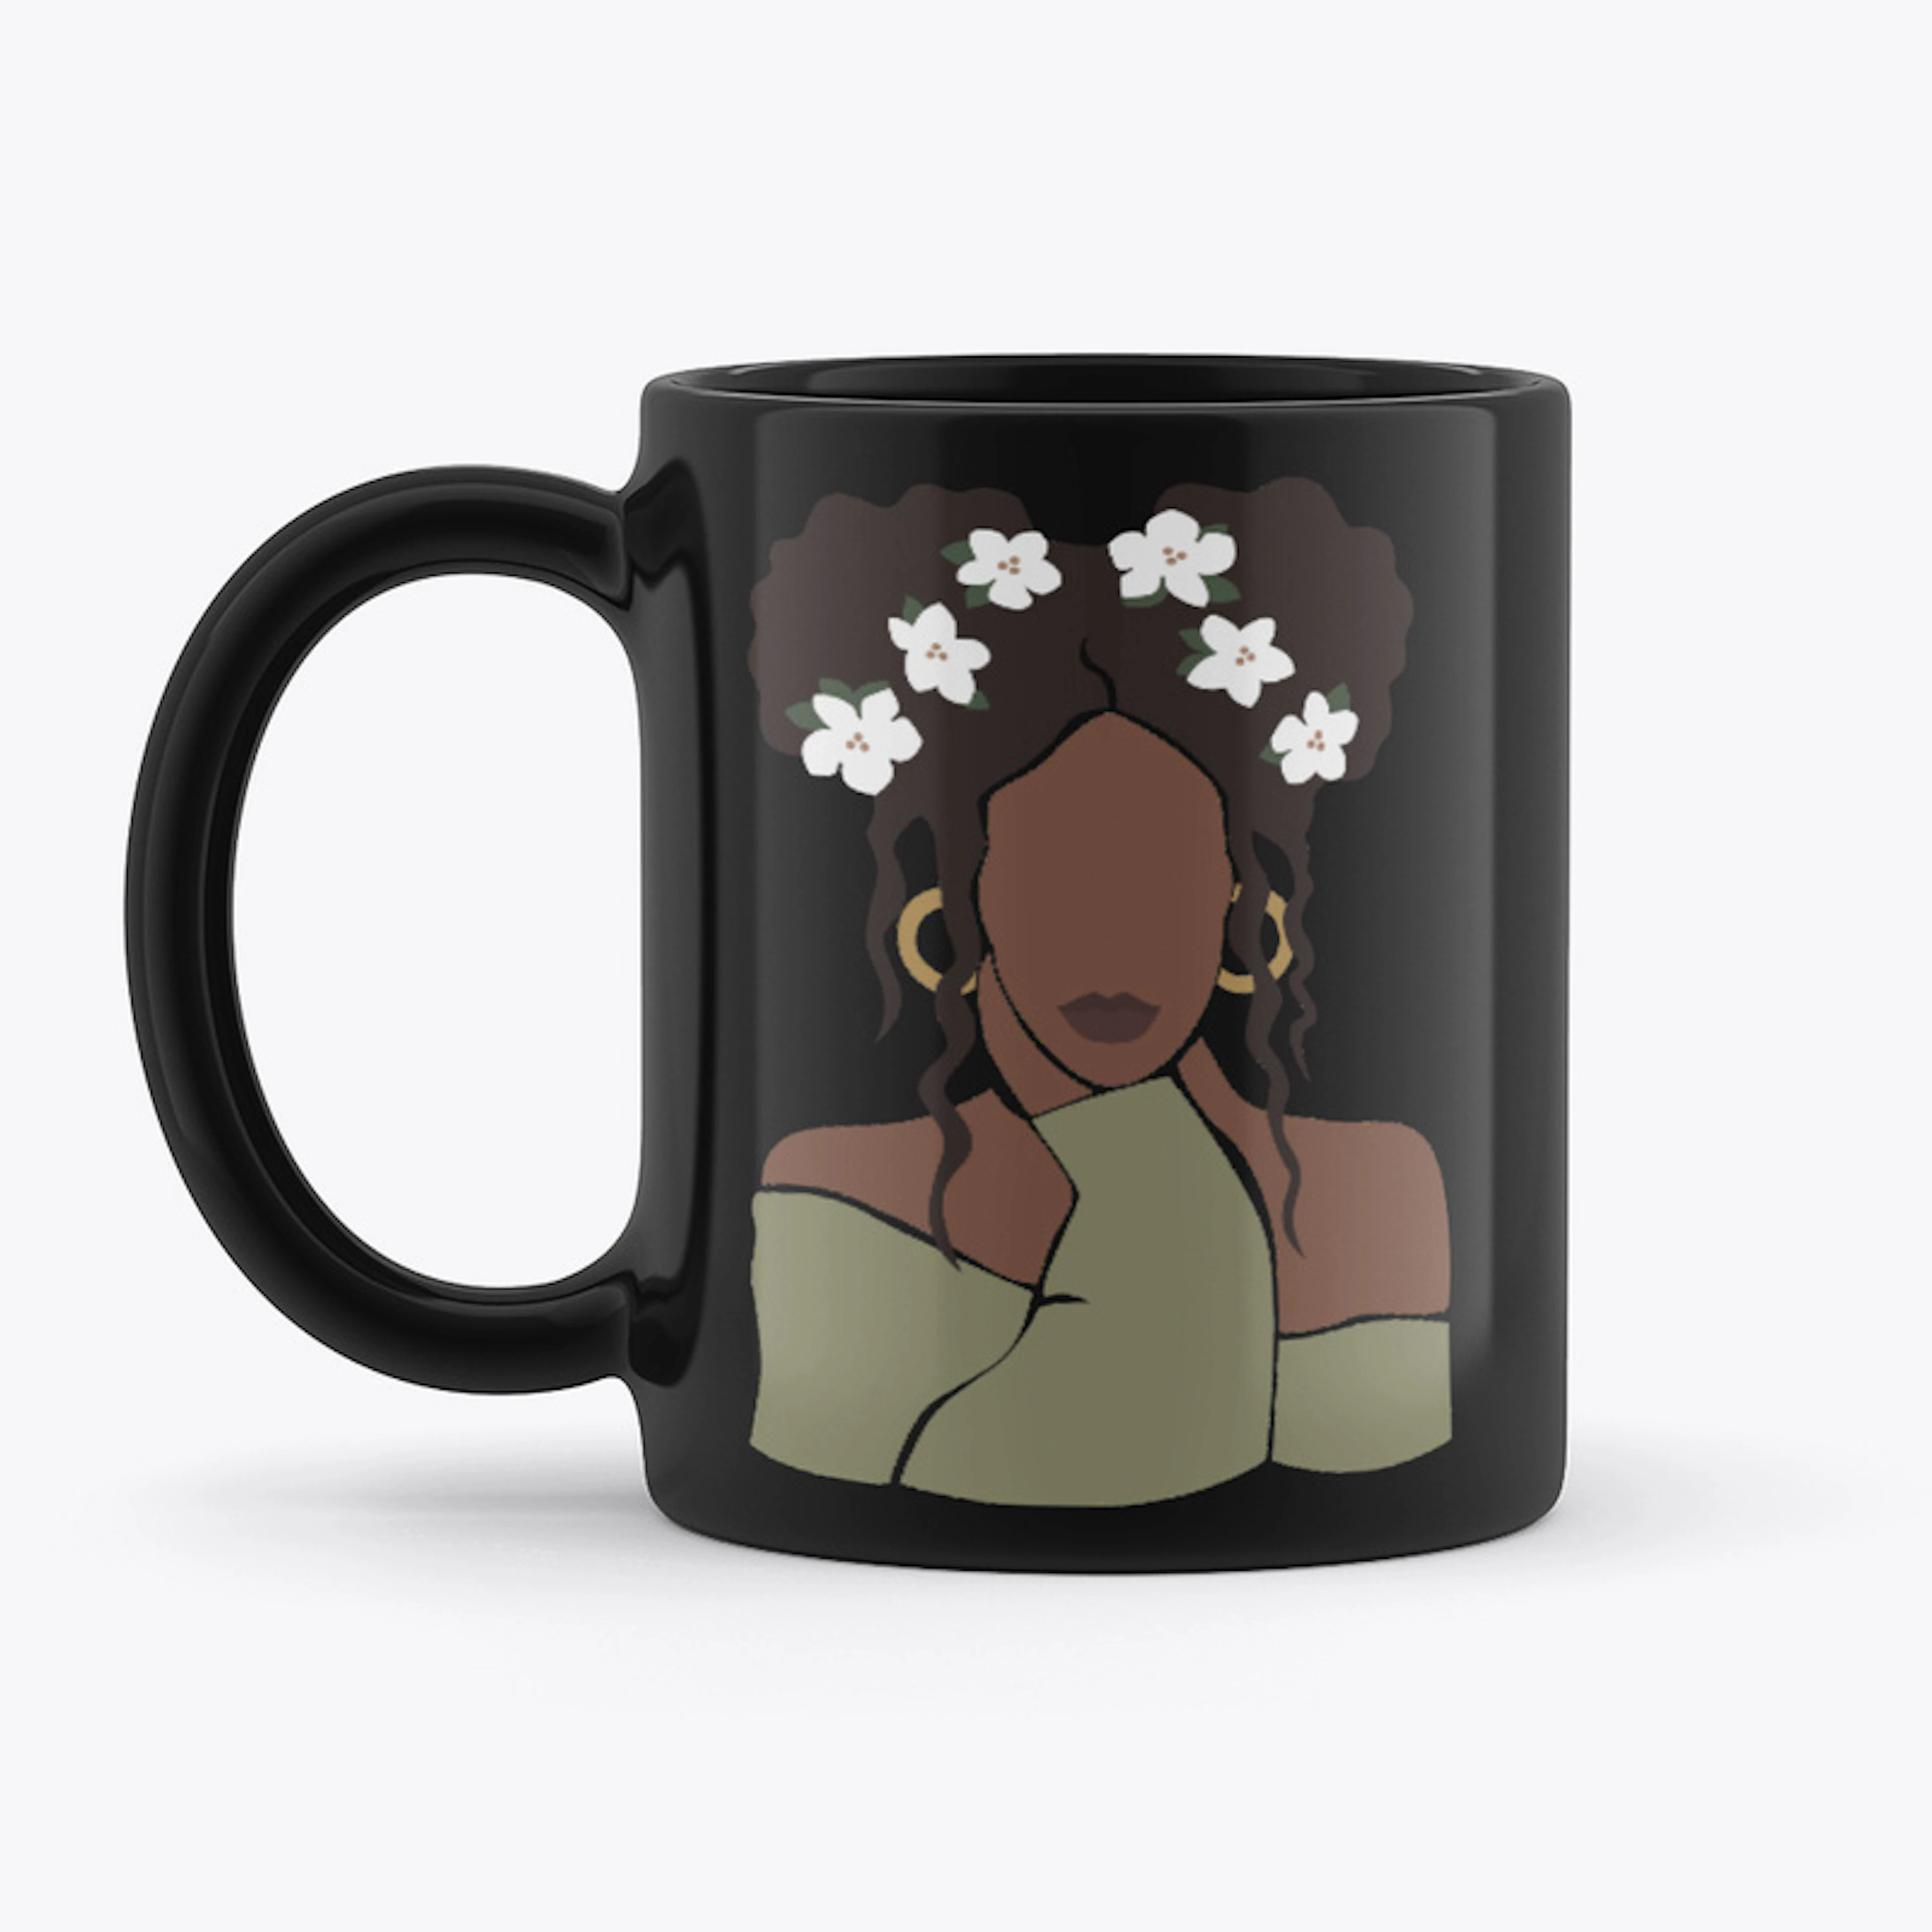 Self-Care Mug 